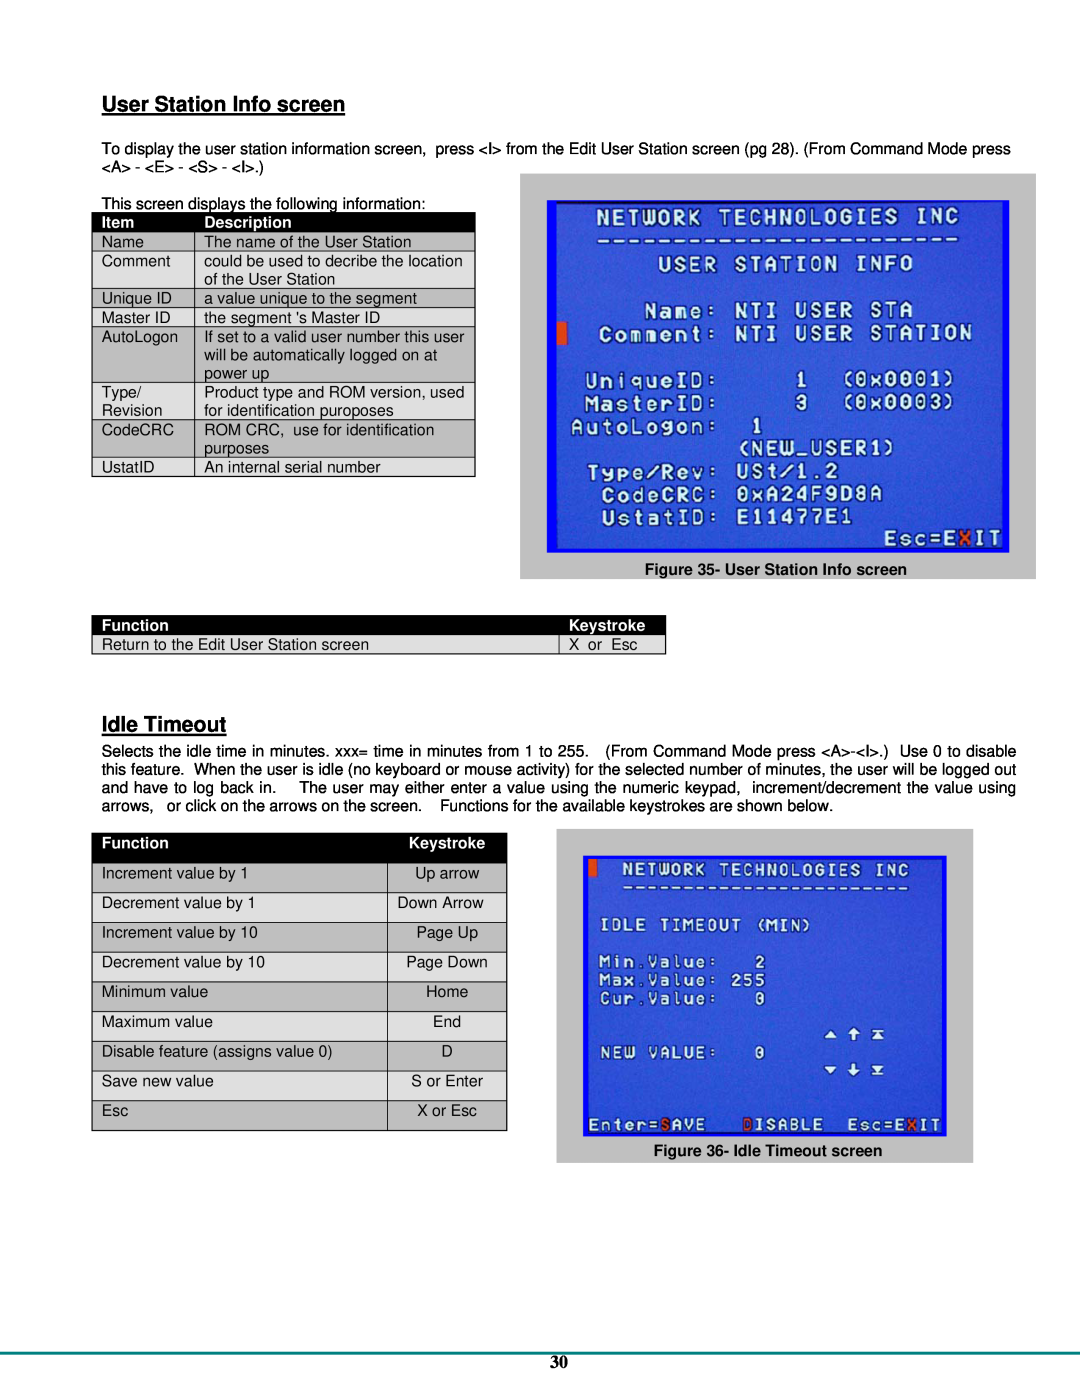 Network Technologies CAT5 User Station Info screen, Idle Timeout screen, Description, Function, Keystroke 